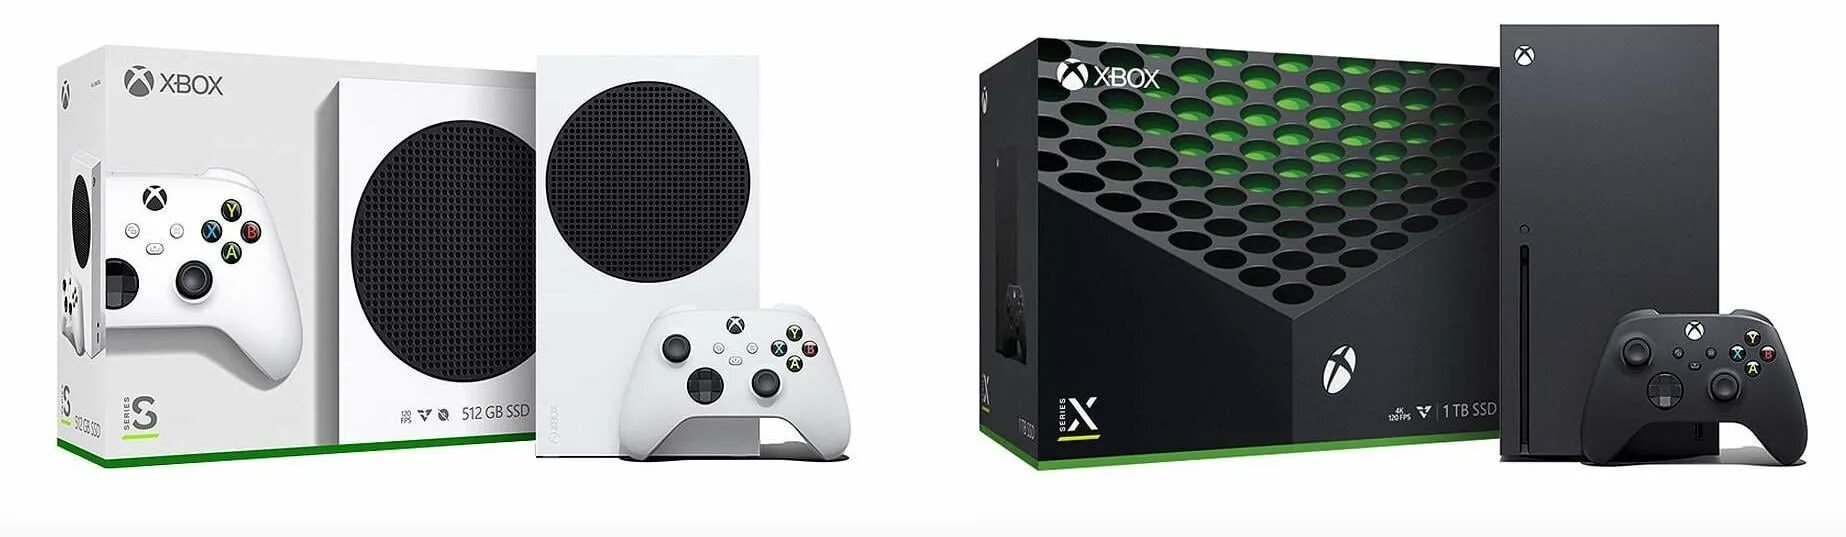 Xbox series моды. Microsoft Xbox Series s 512 ГБ. Игровая приставка Microsoft Xbox Series s 512gb Xbox гарнитура. Xbox Series x Console 1tb. Игровая консоль приставка Xbox Series x 1tb SSD.